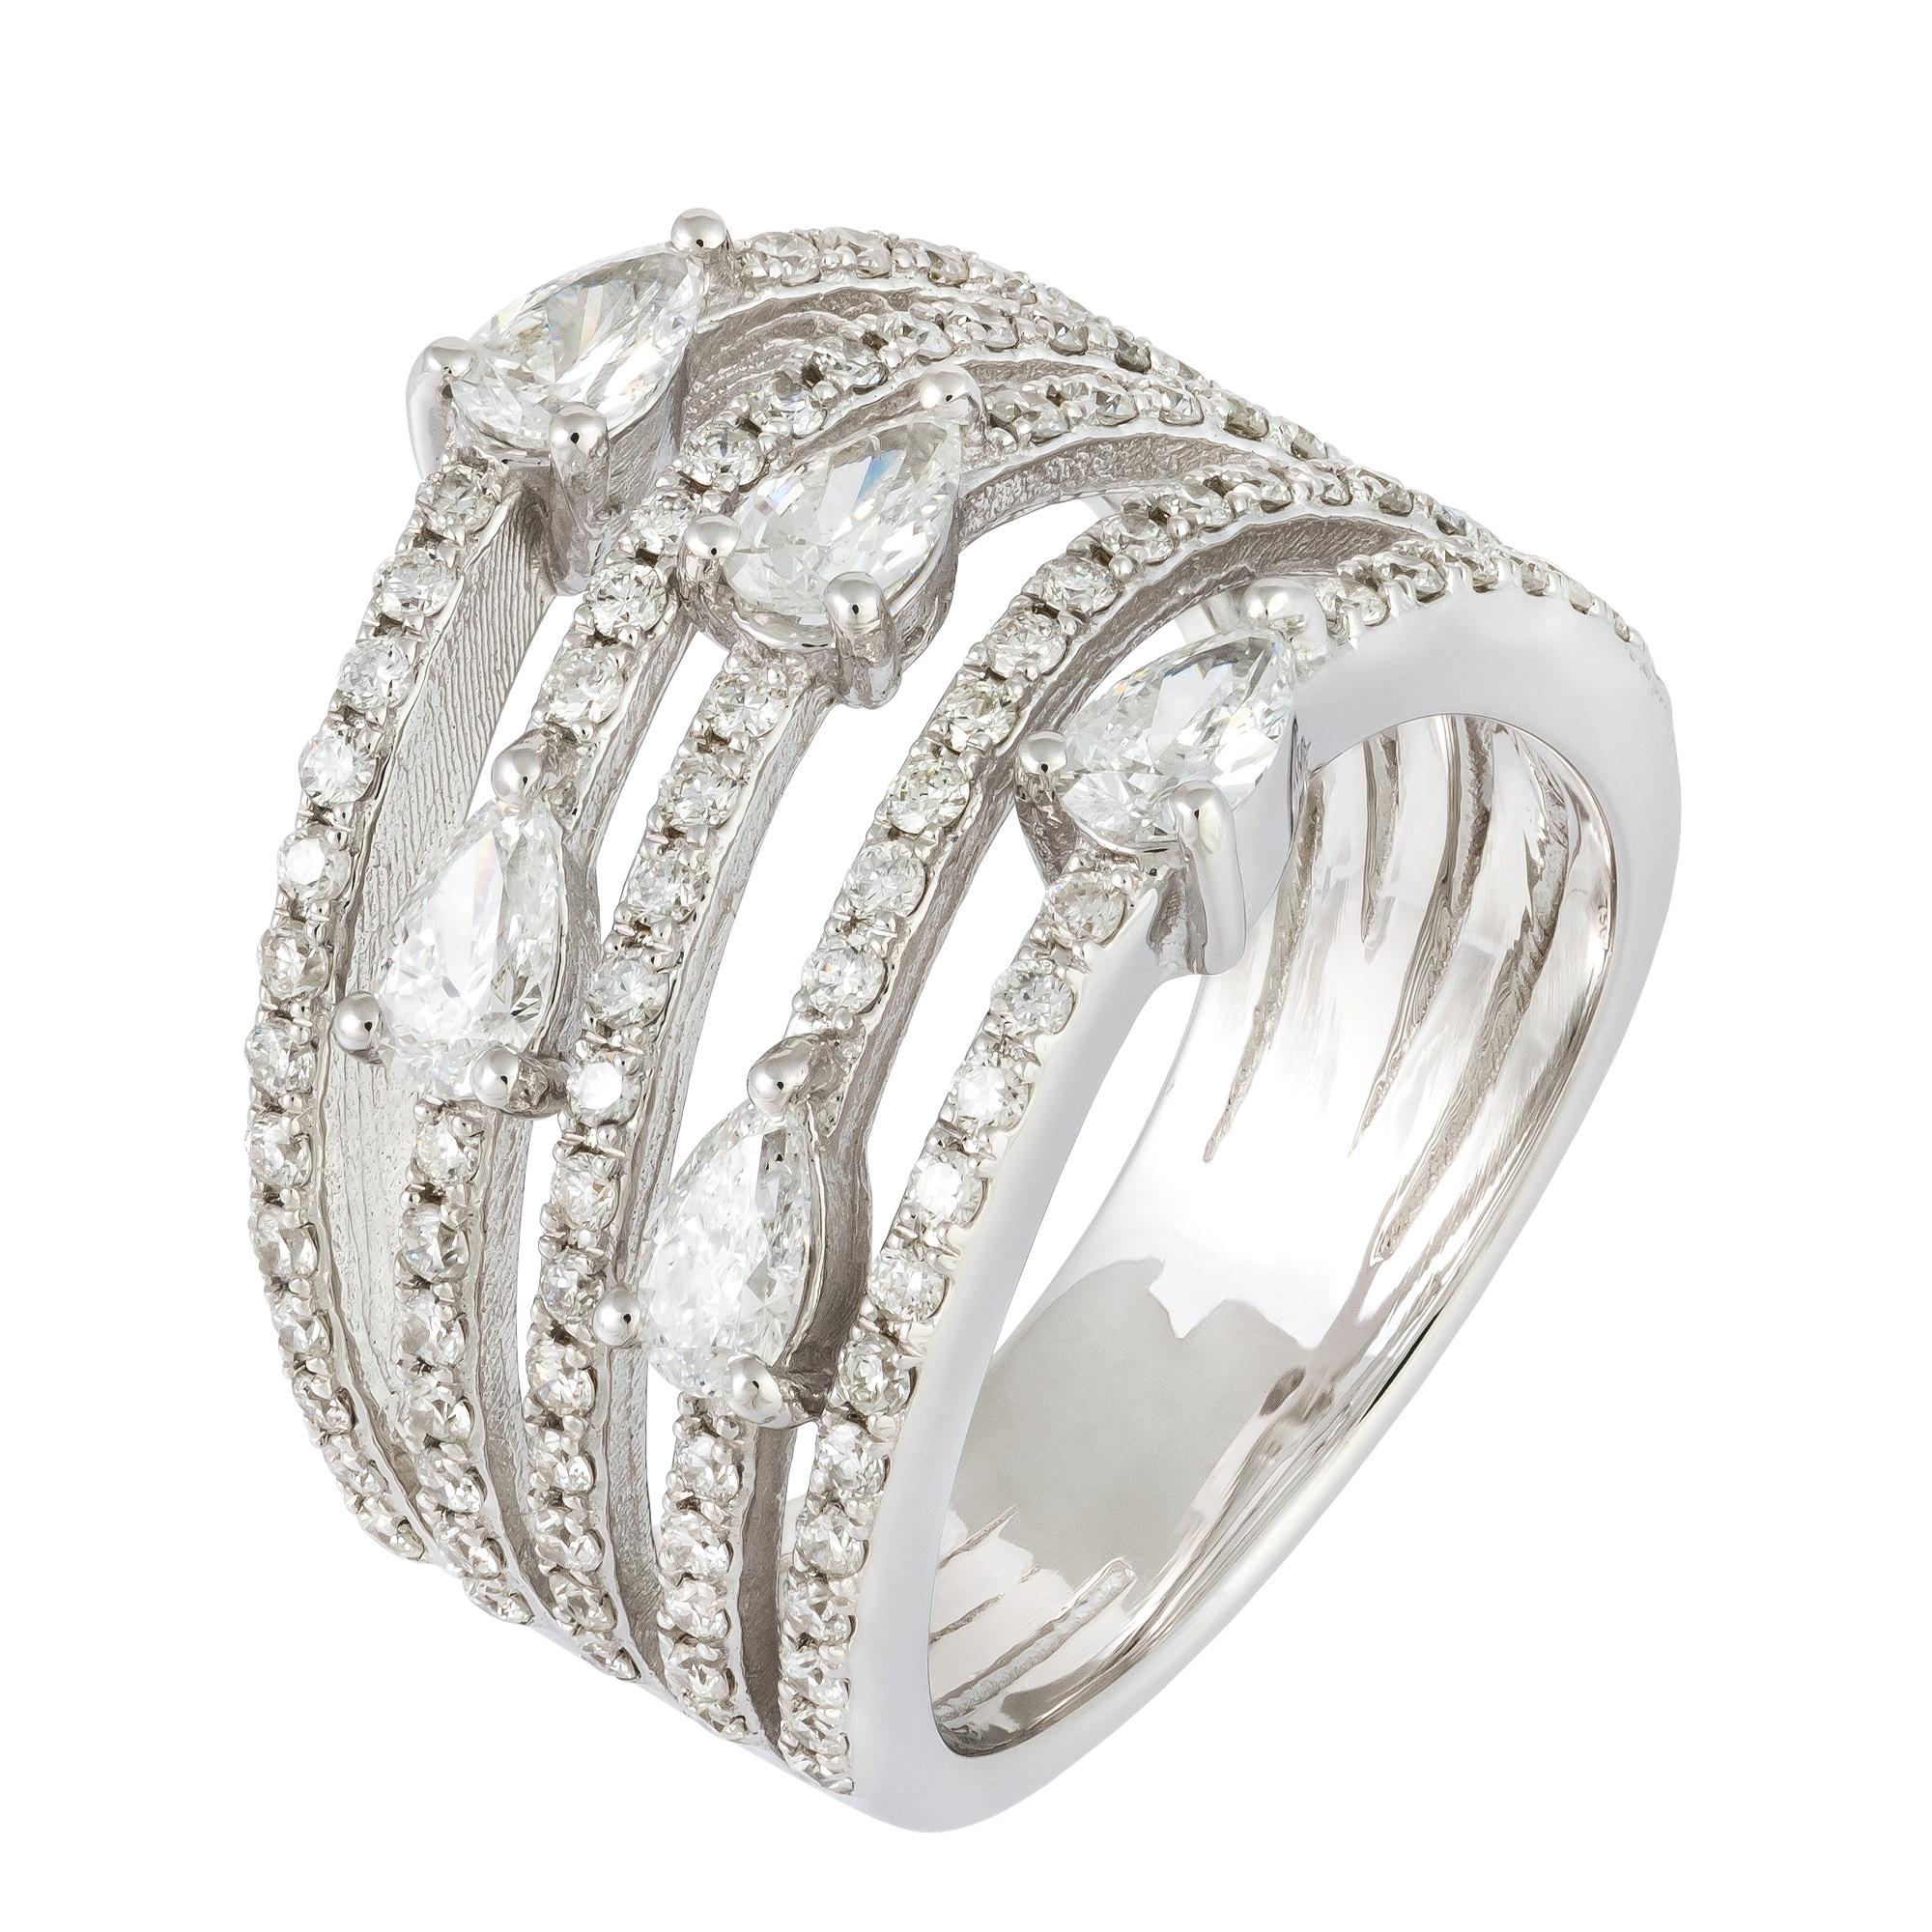 For Sale:  Stunning White 18K Gold White Diamond Ring For Her 4